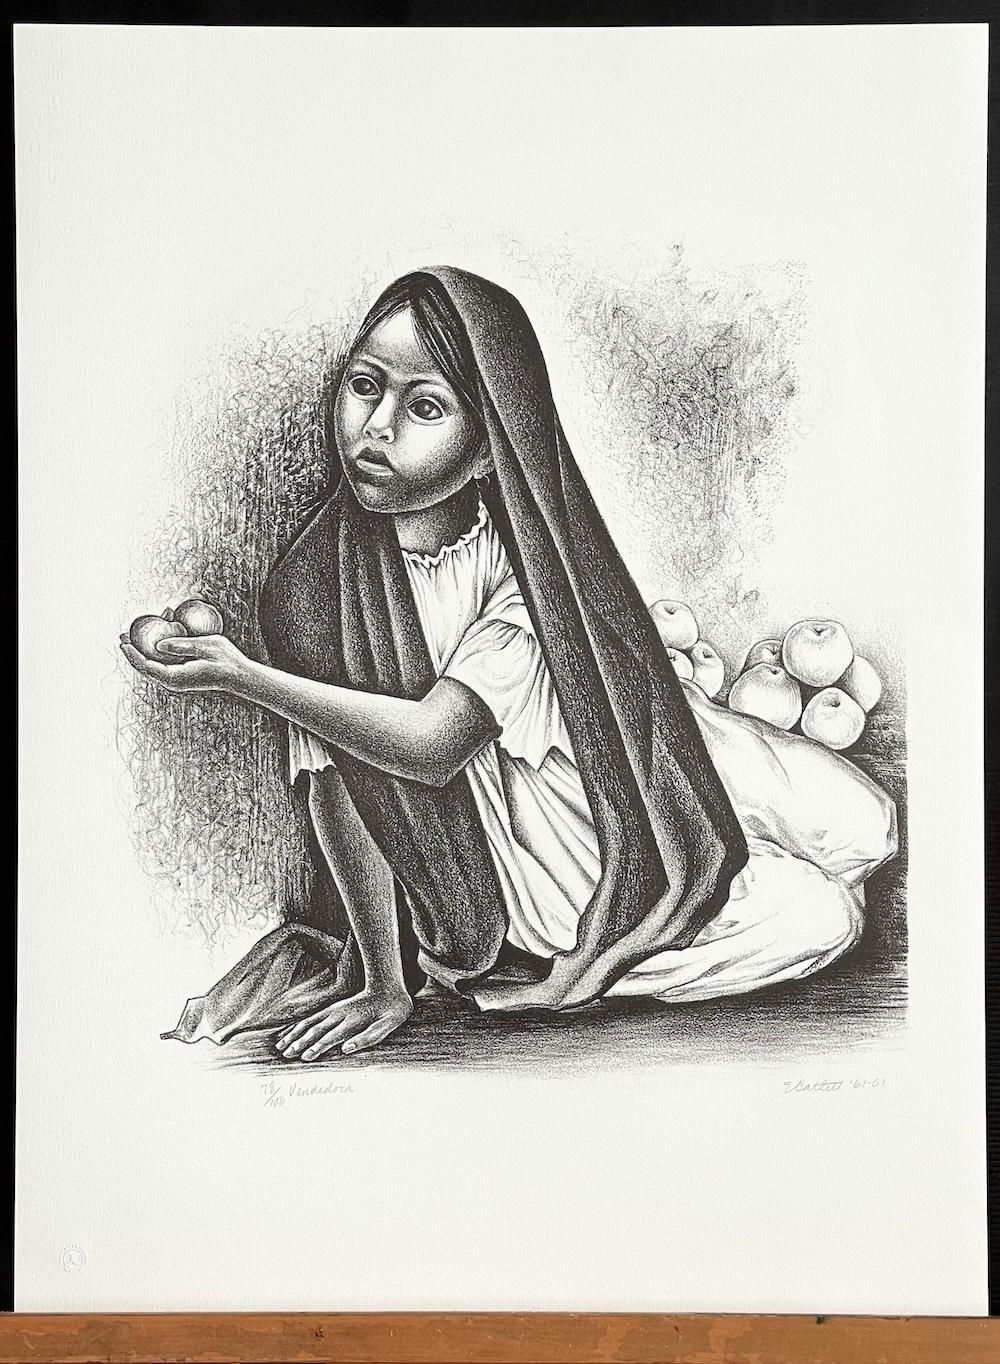 VENDEDORA, eine Lithografie in limitierter Auflage der bekannten, in den USA geborenen mexikanischen Bildhauerin und Grafikerin Elizabeth Catlett (geb. 1915-2012), zeigt das einfühlsame Schwarz-Weiß-Porträt eines jungen mexikanischen Dorfmädchens,